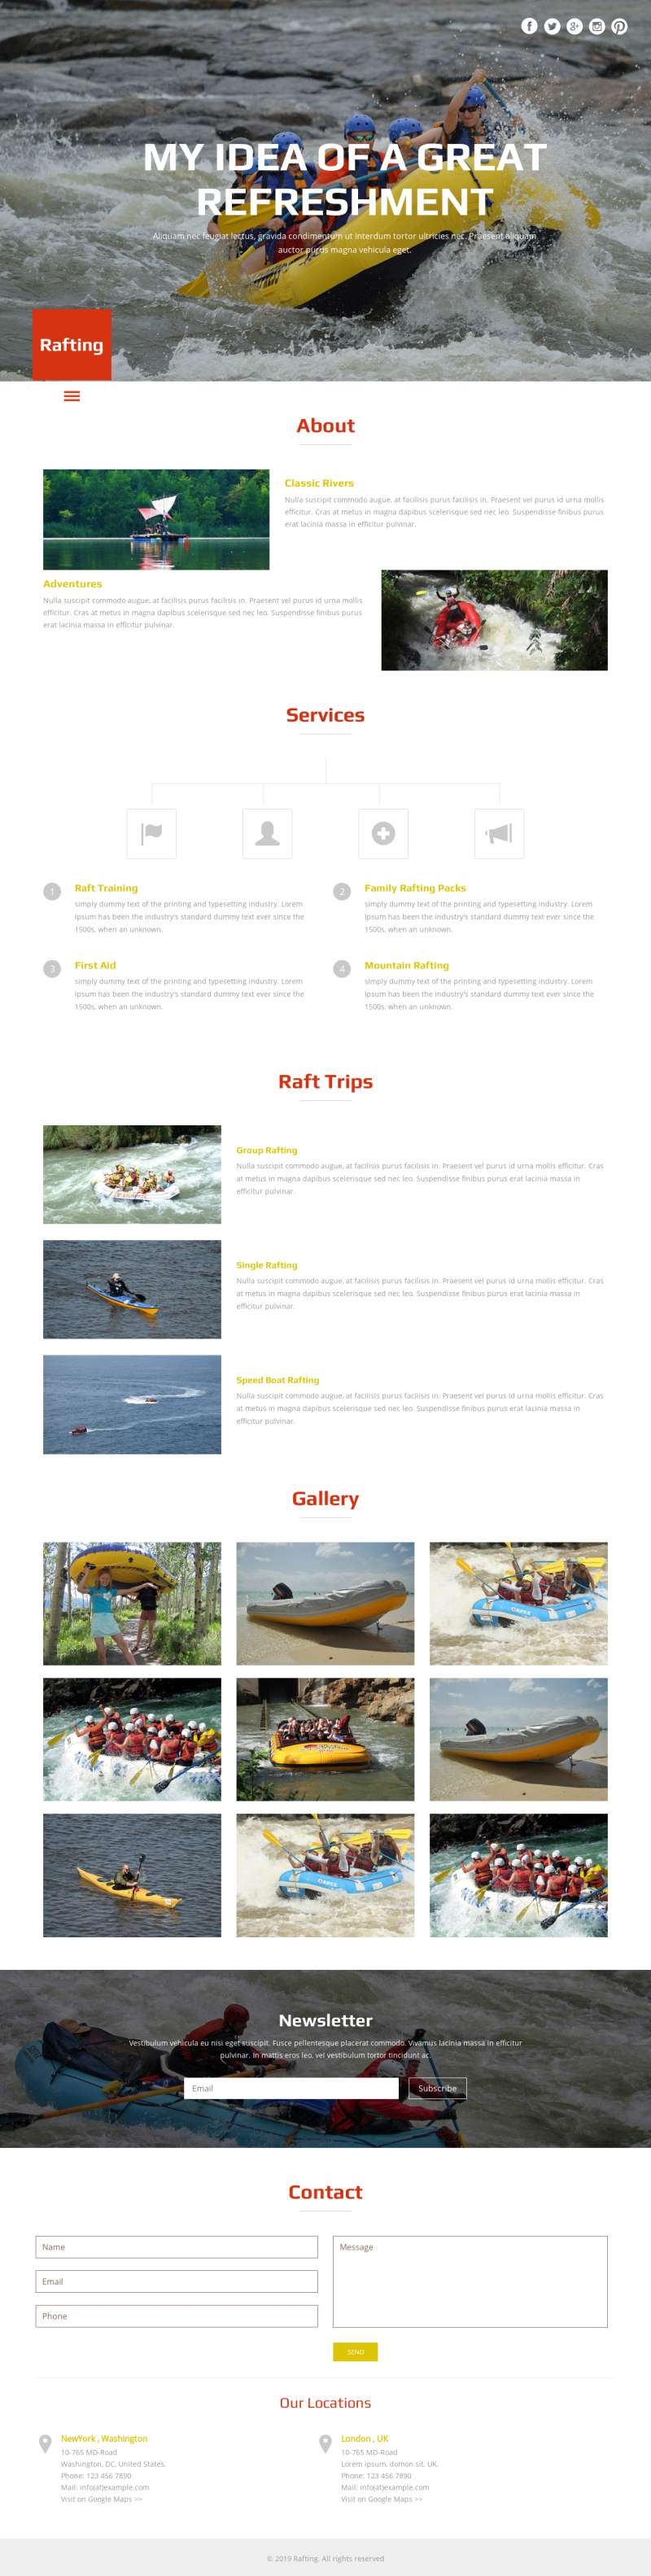 皮划艇漂流运动网站前端模板html下载